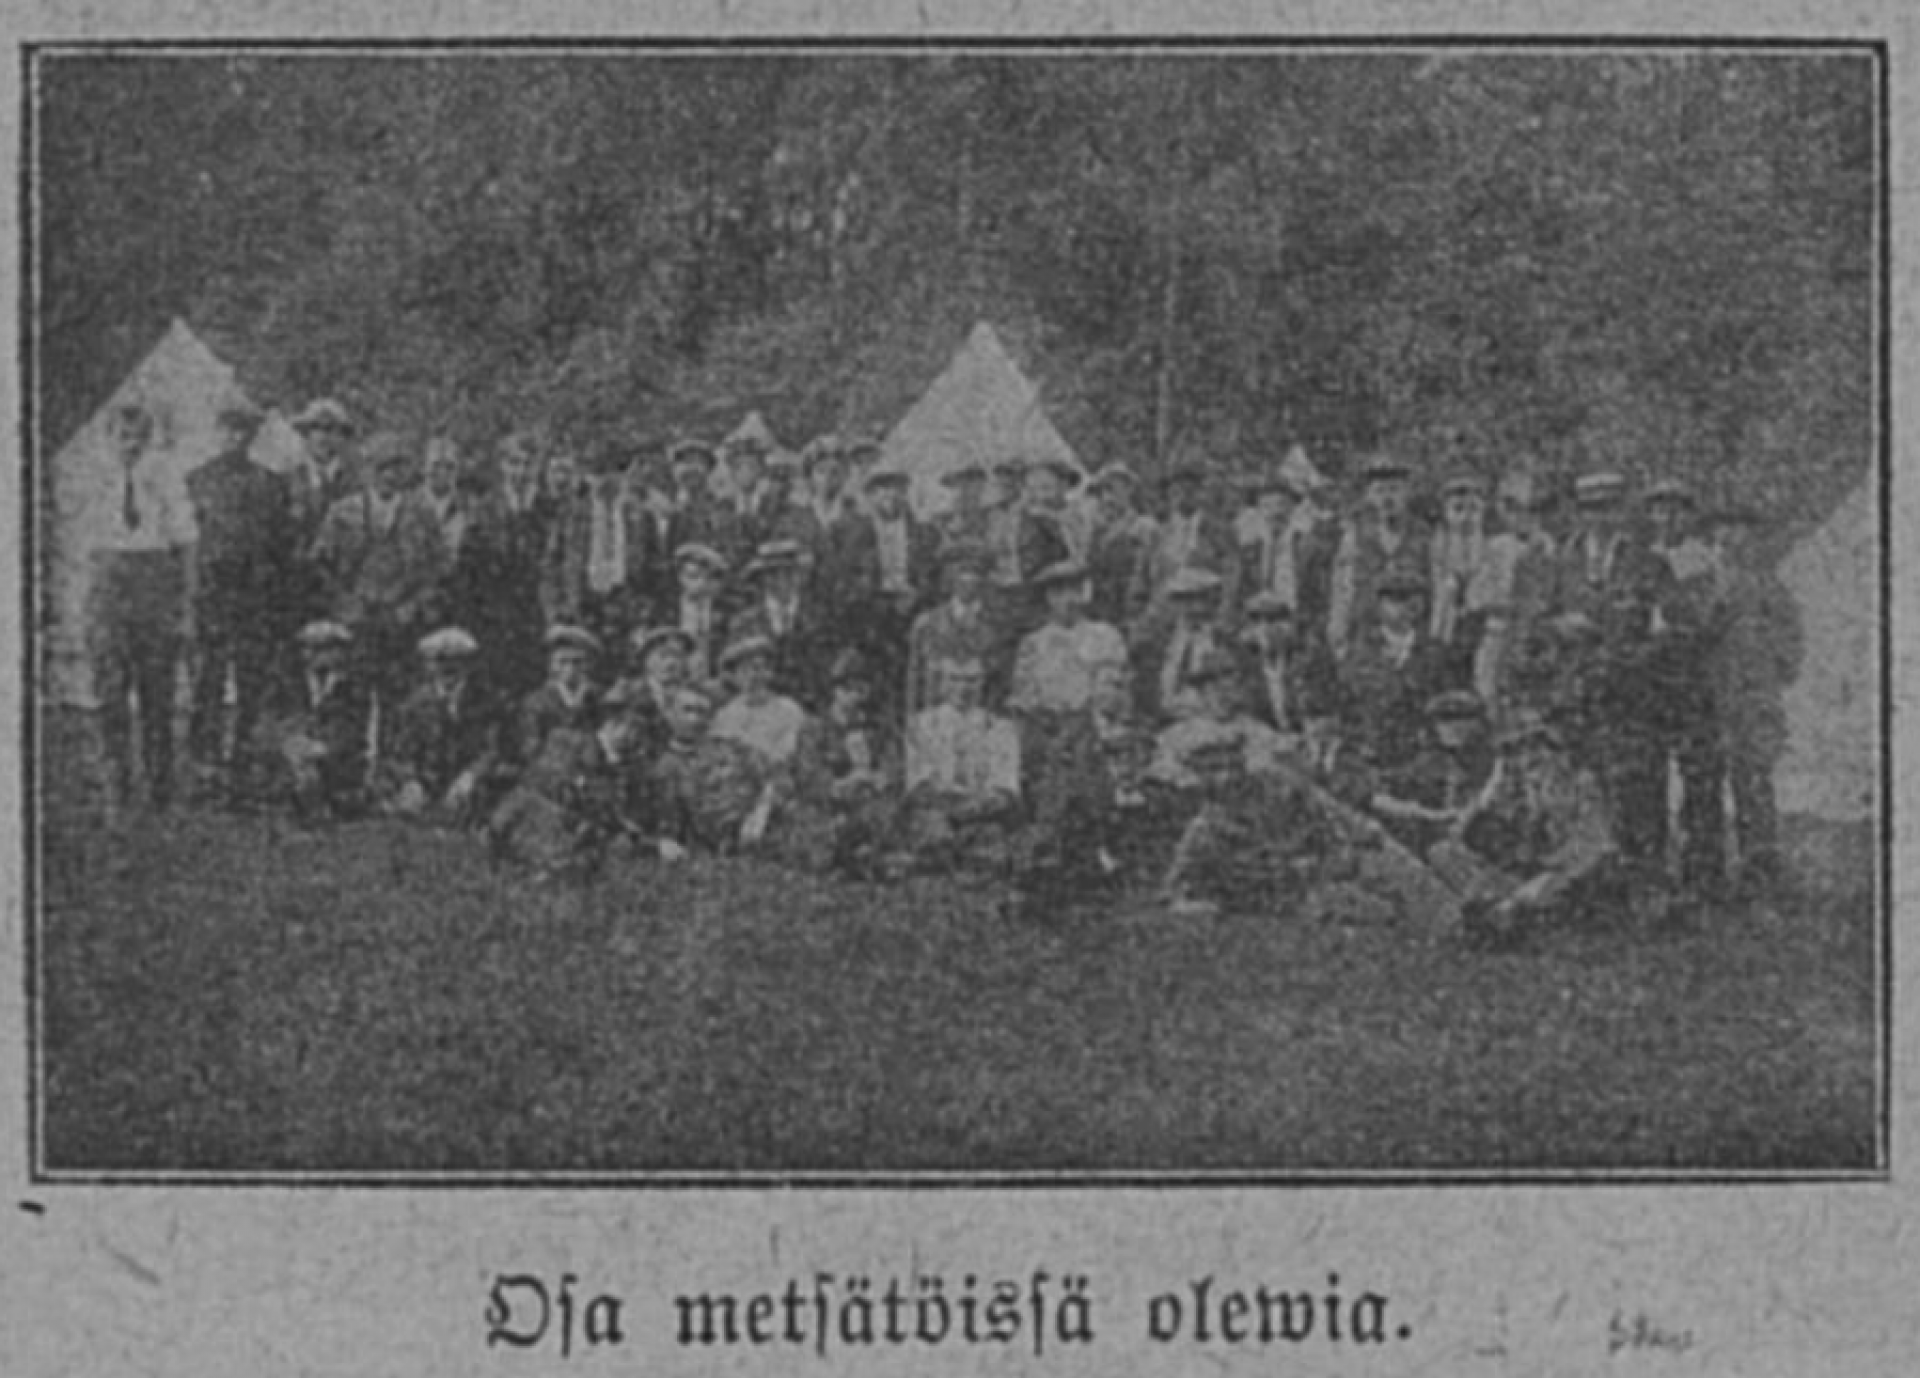 "Osa metsätöissä olewia." Kuva Merimiehen Ystävä -lehdestä 1.12.1917